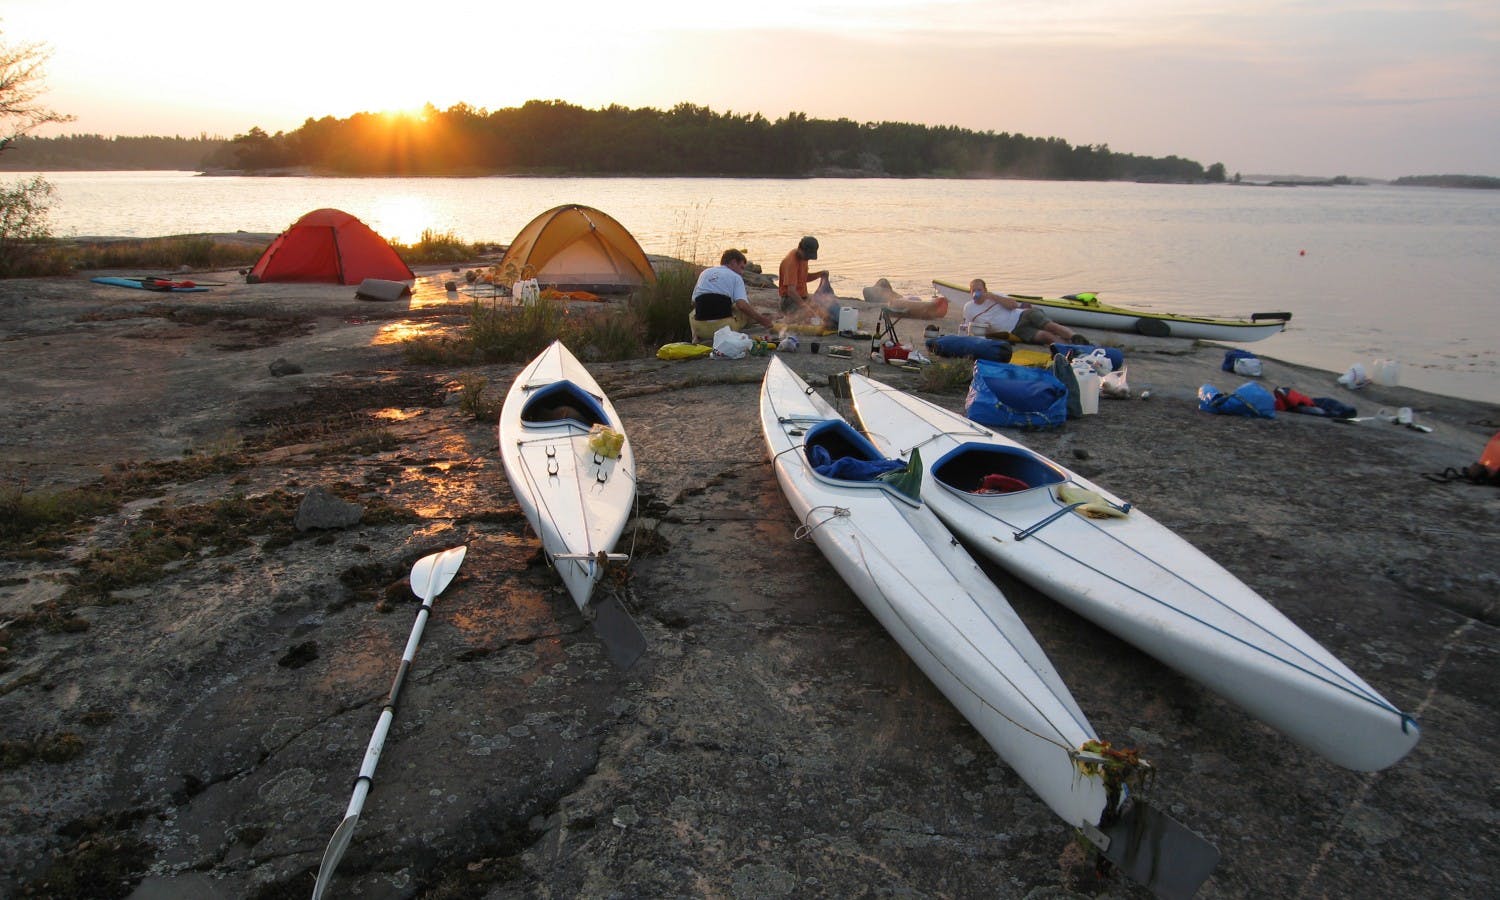 Stockholms skærgård: kayak- og campingudflugt med overnatning